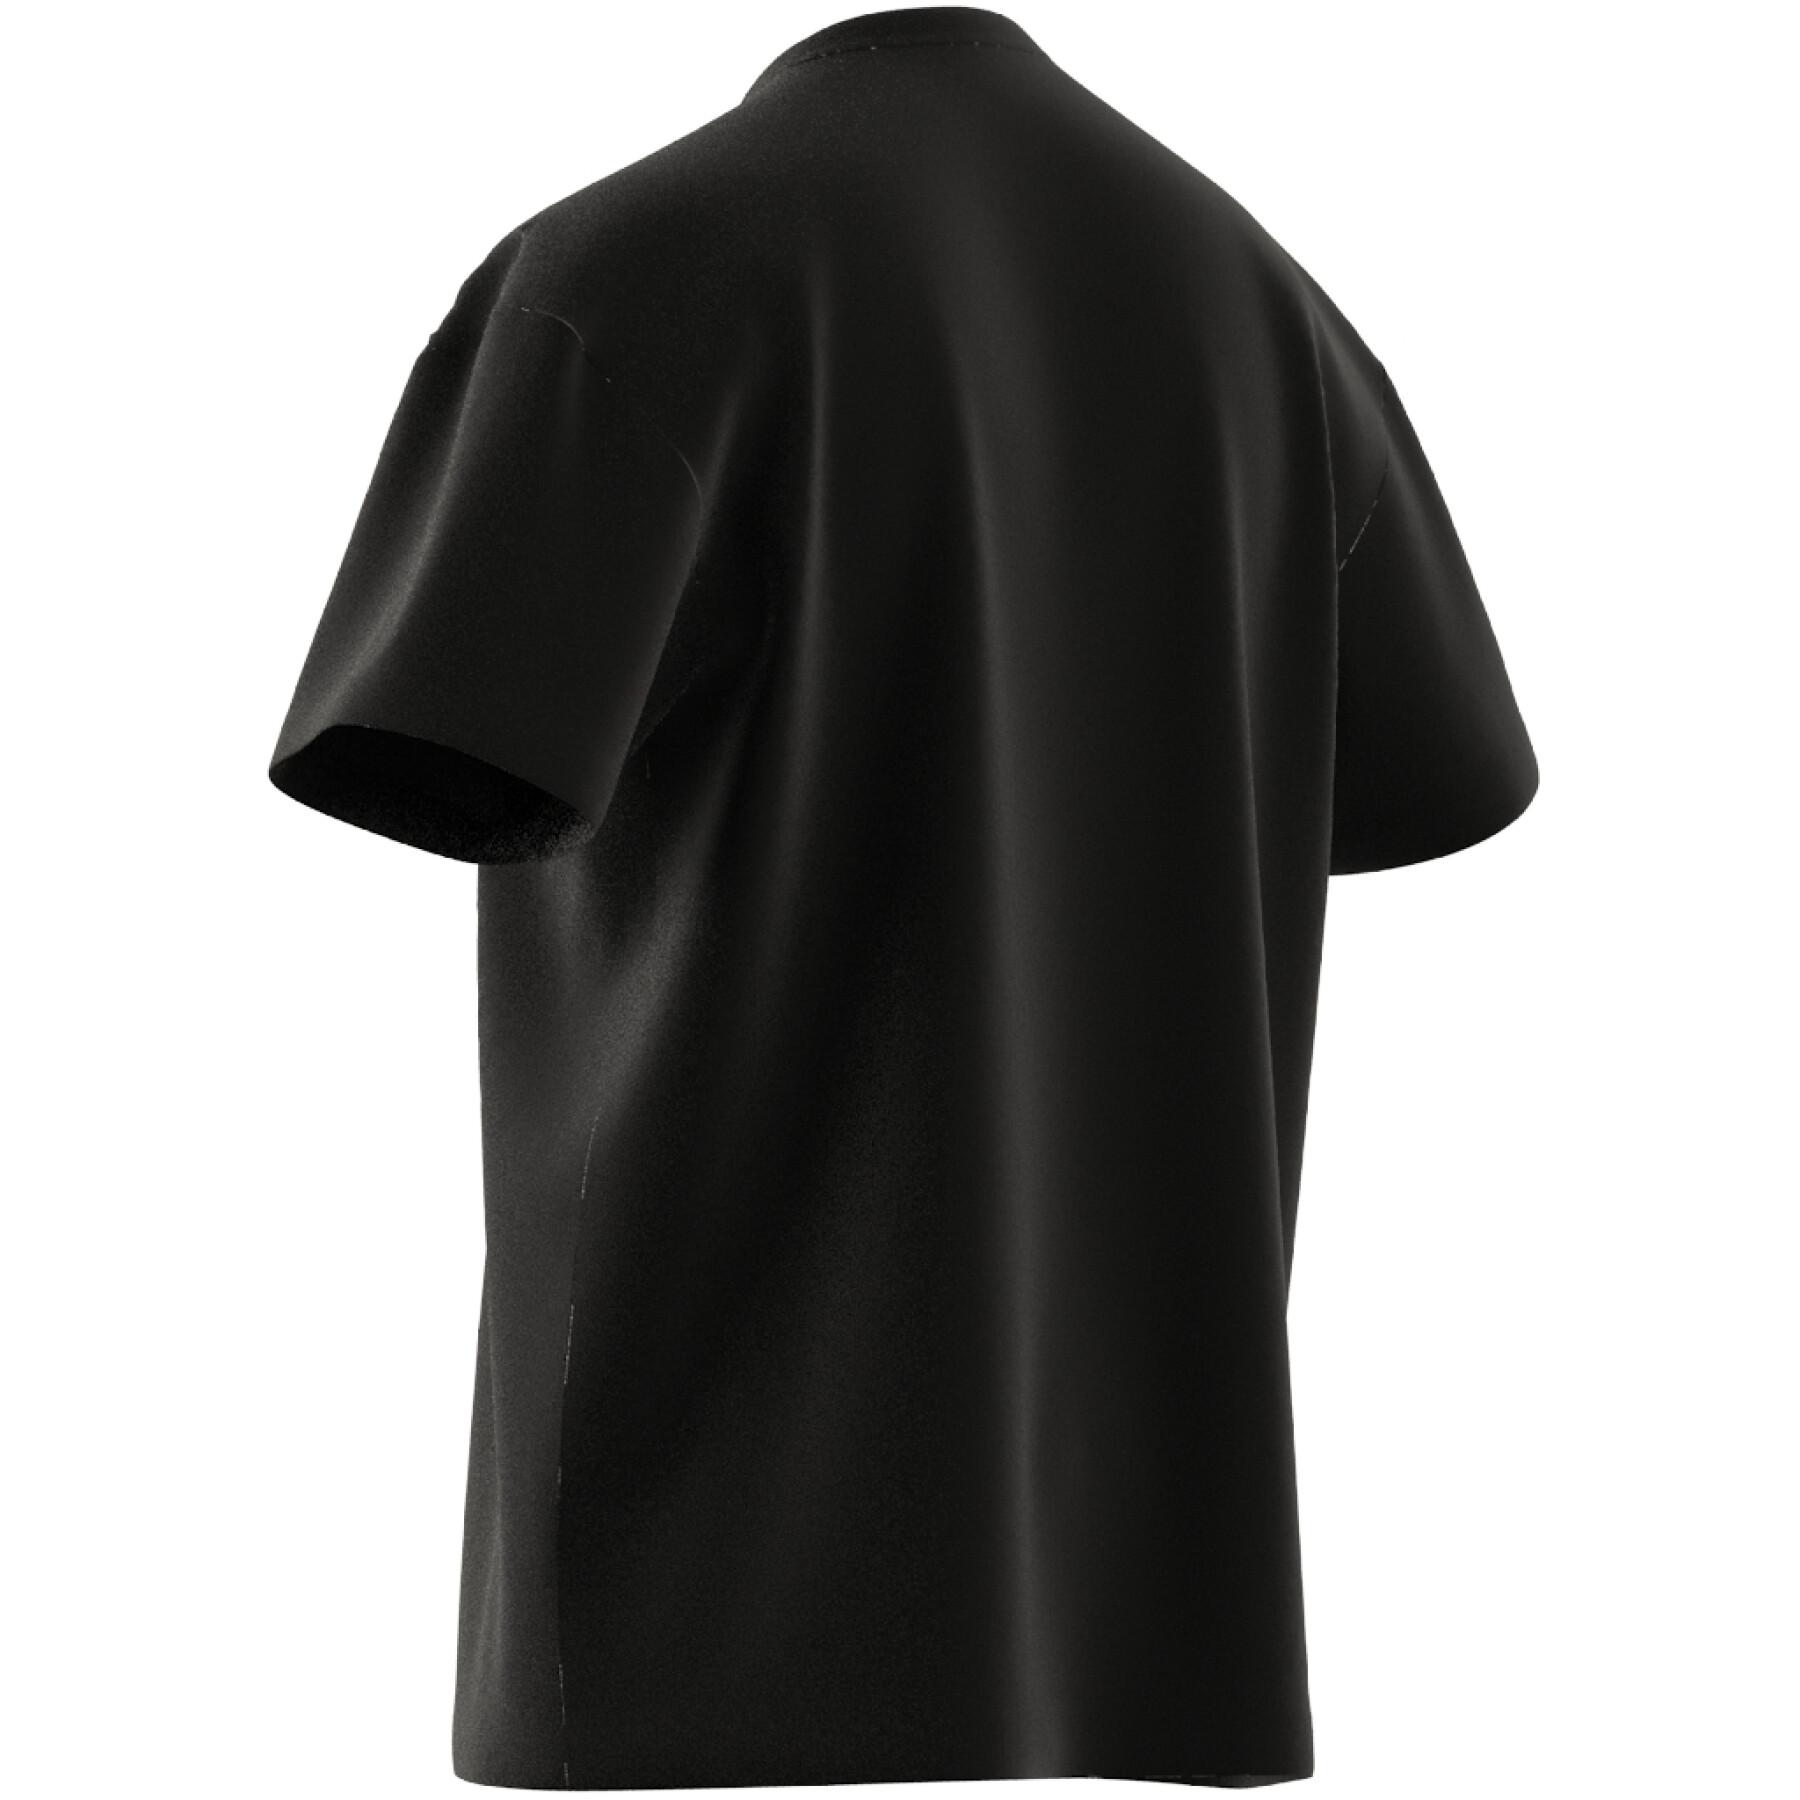 T-Shirt mit fallenden Schultern adidas Essentials FeelVivid